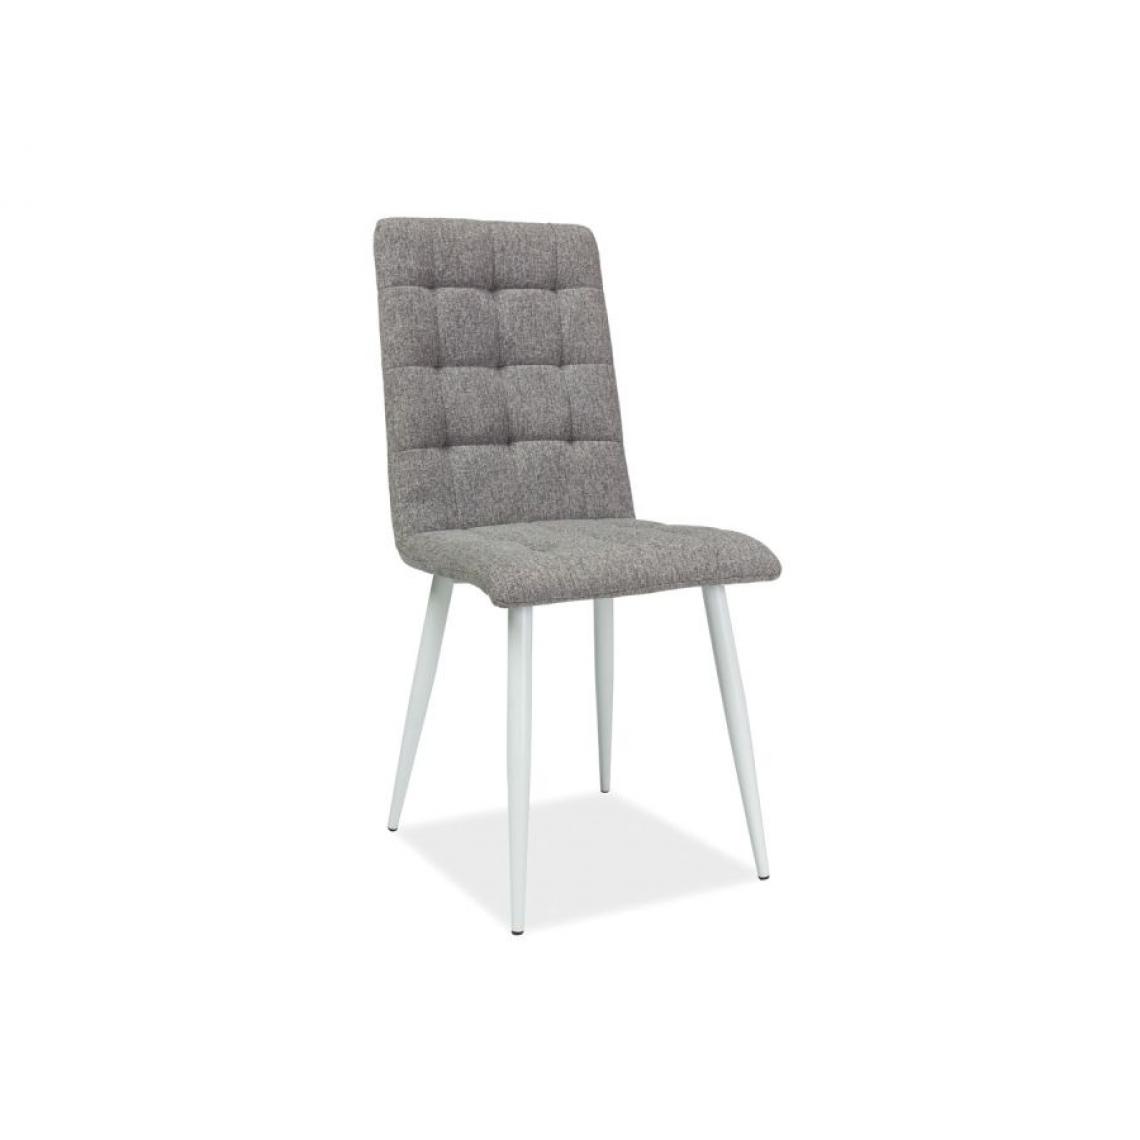 Hucoco - OTTA | Chaise moderne avec pieds en métal salon/salle à manger | Dimensions : 94x44x39cm | Rembourrée en tissu | Ergonomique - Gris - Chaises